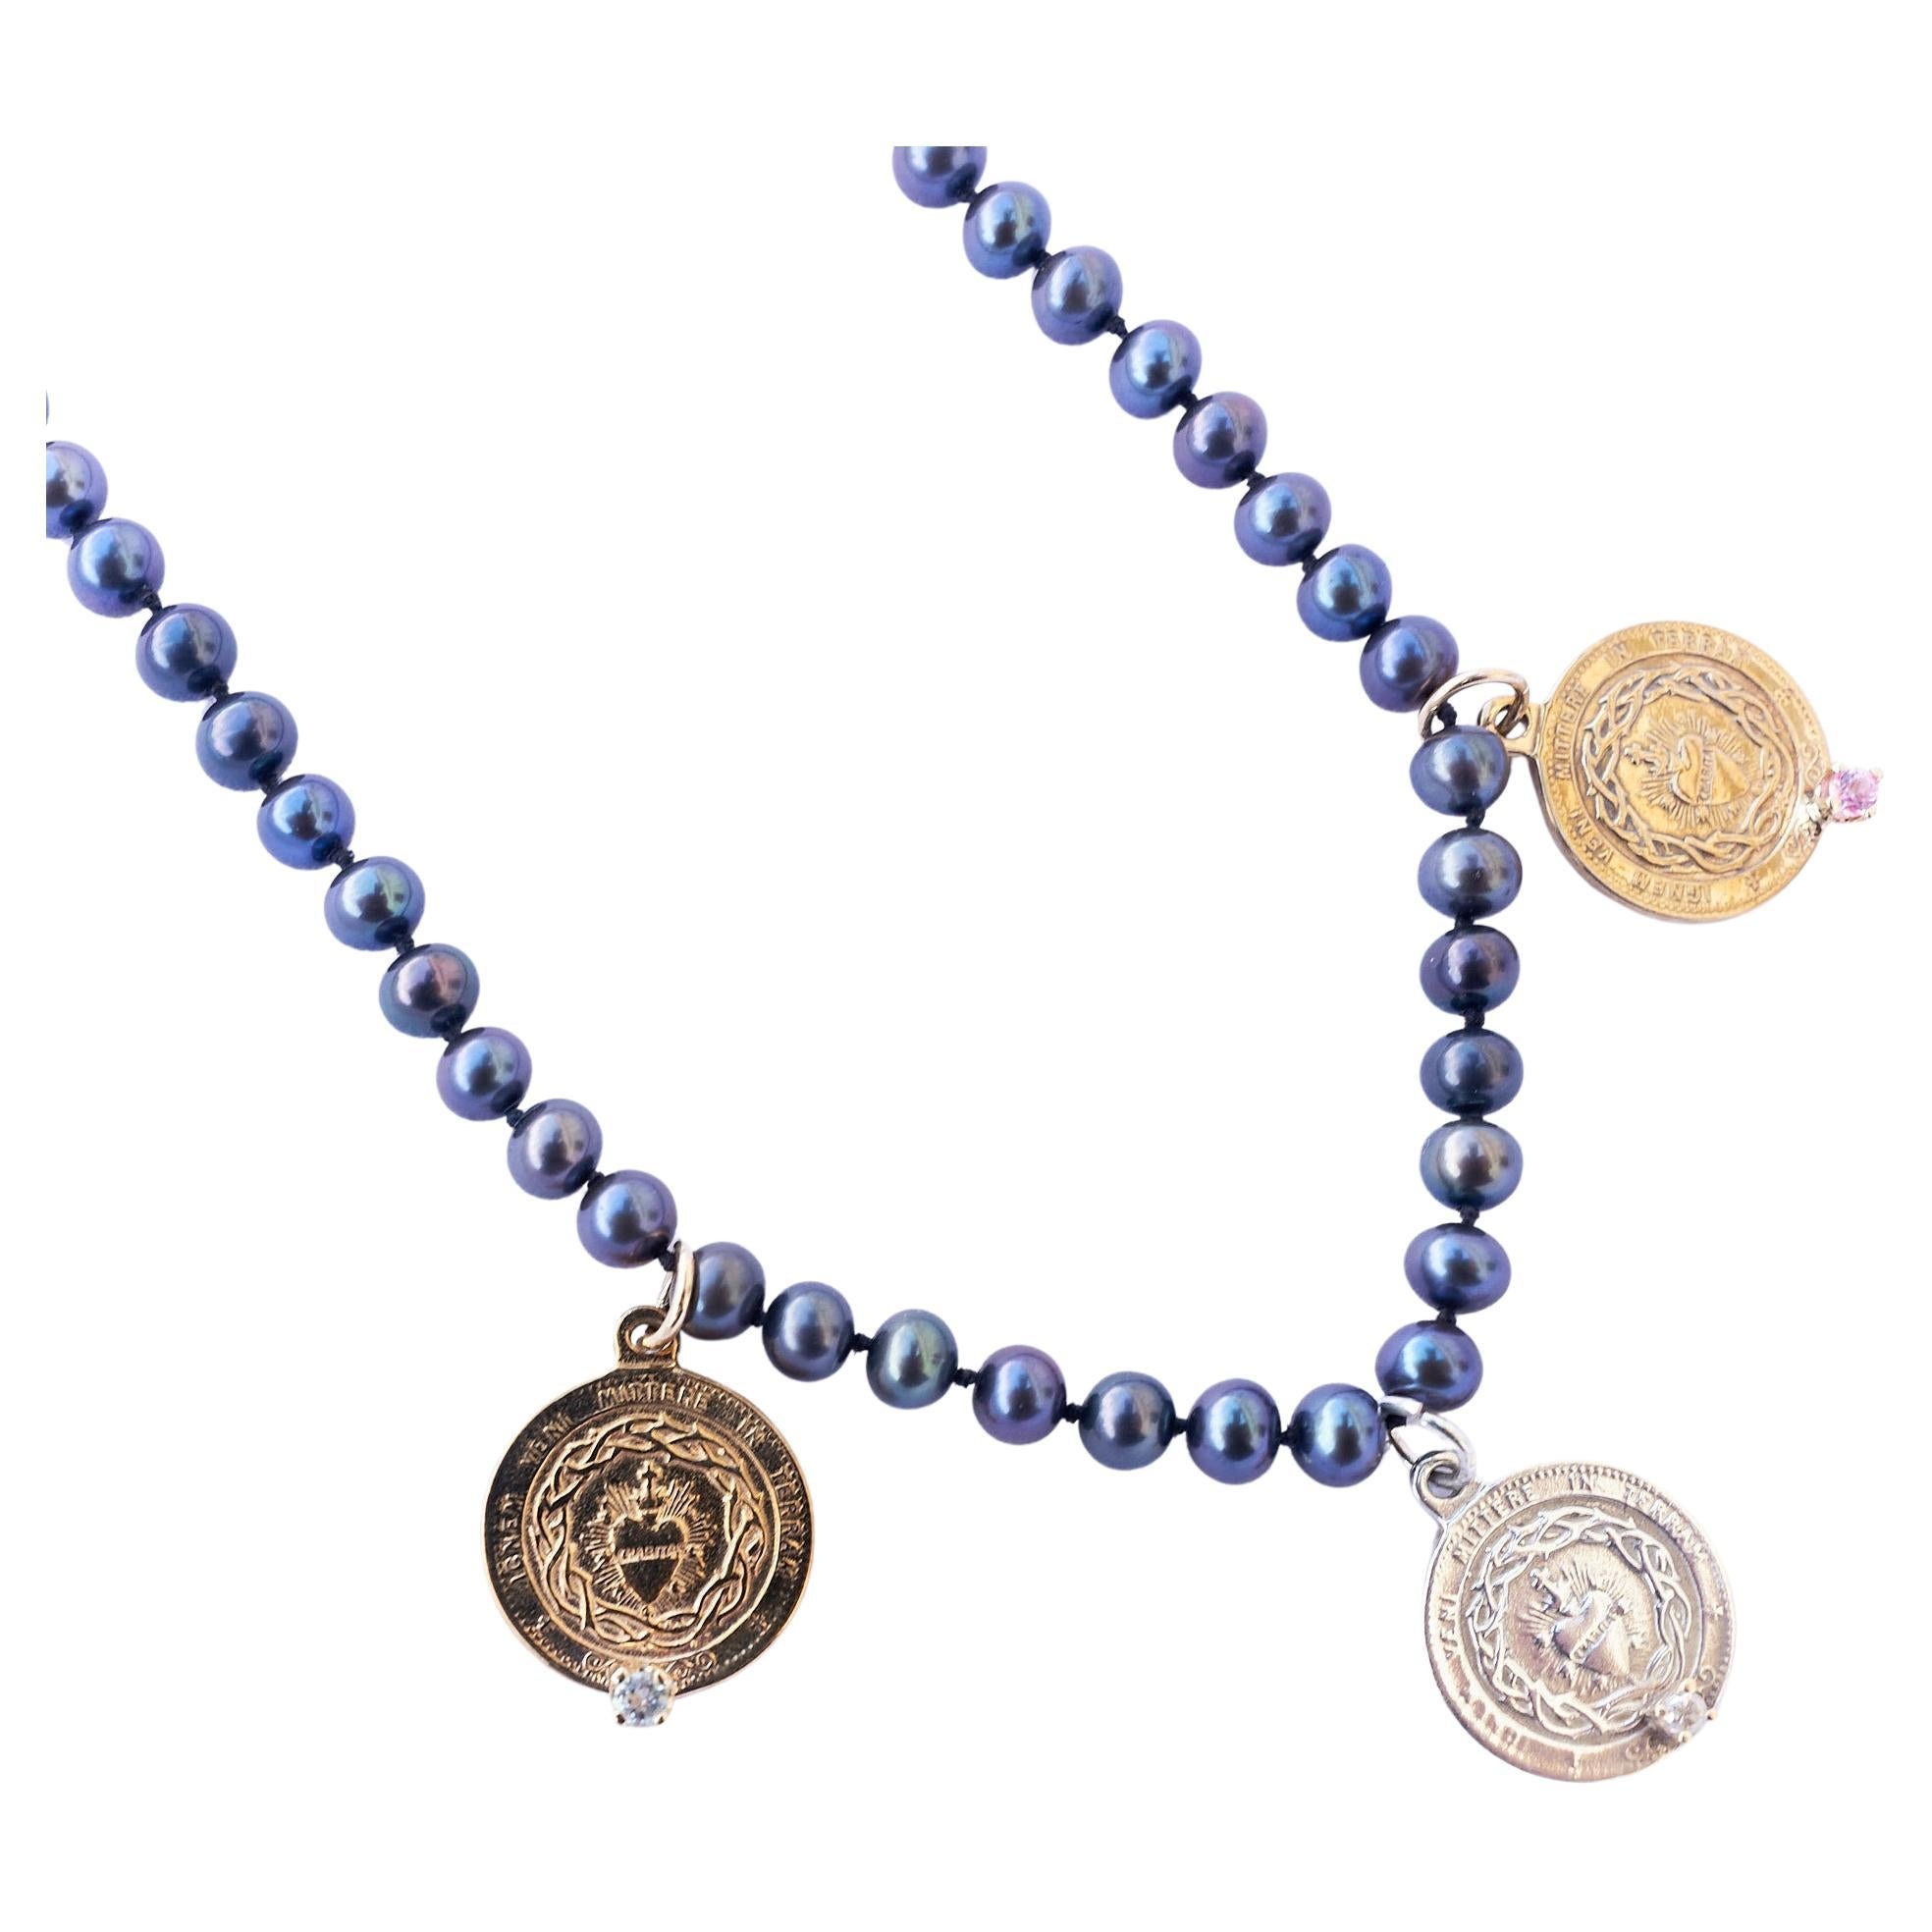 Saphir Aquamarin Herz Medaille Halskette Schwarz Perle Silber Bronze J DAUPHIN
18